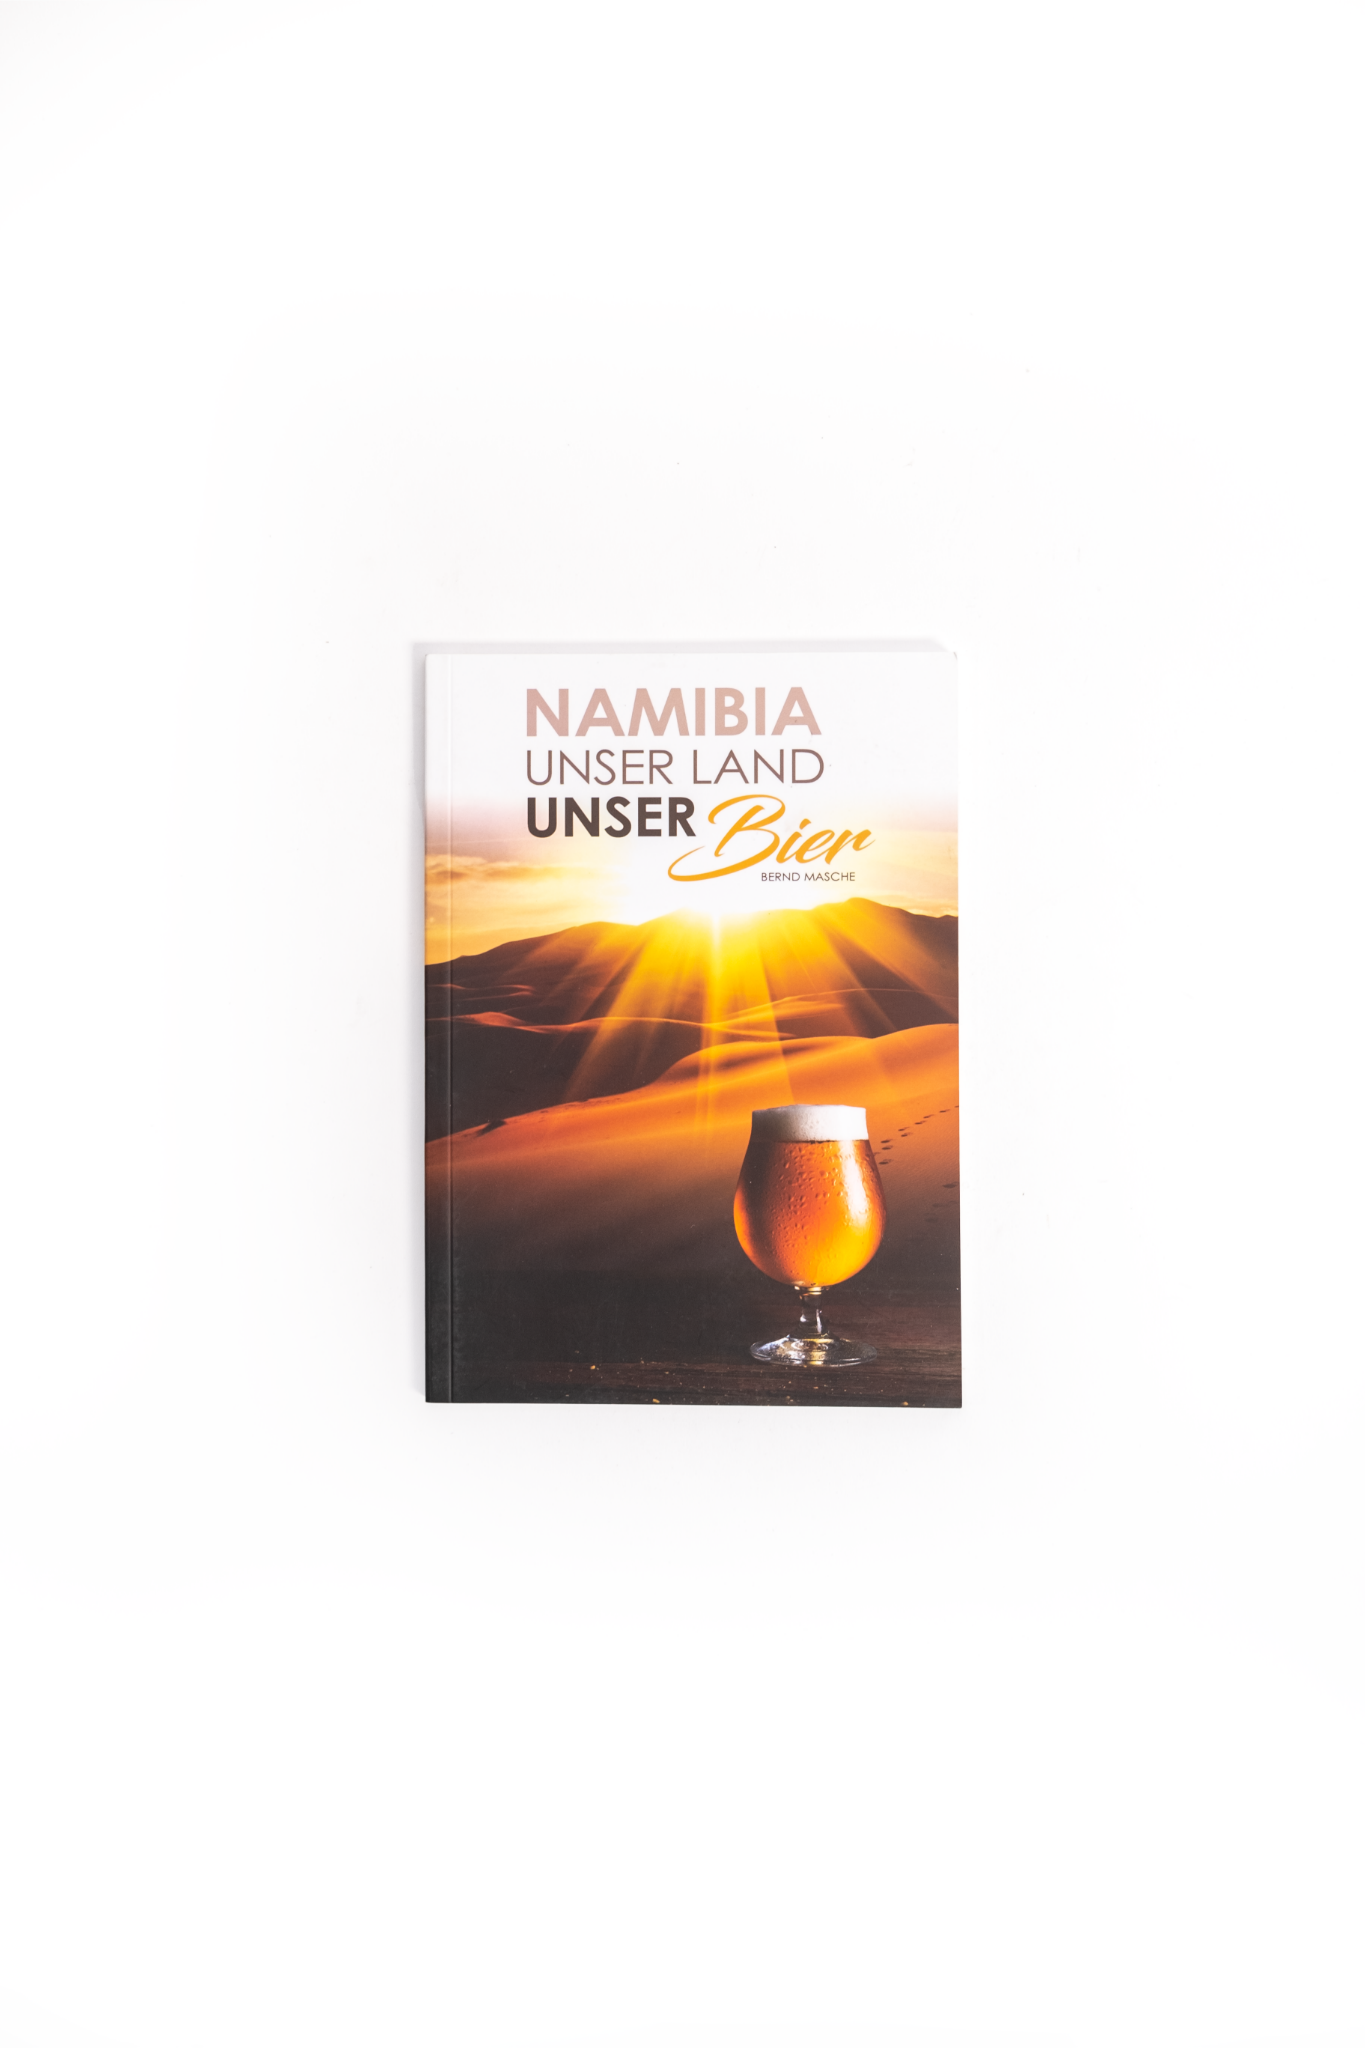 Namibia Unser Land Unser Bier Buch - German